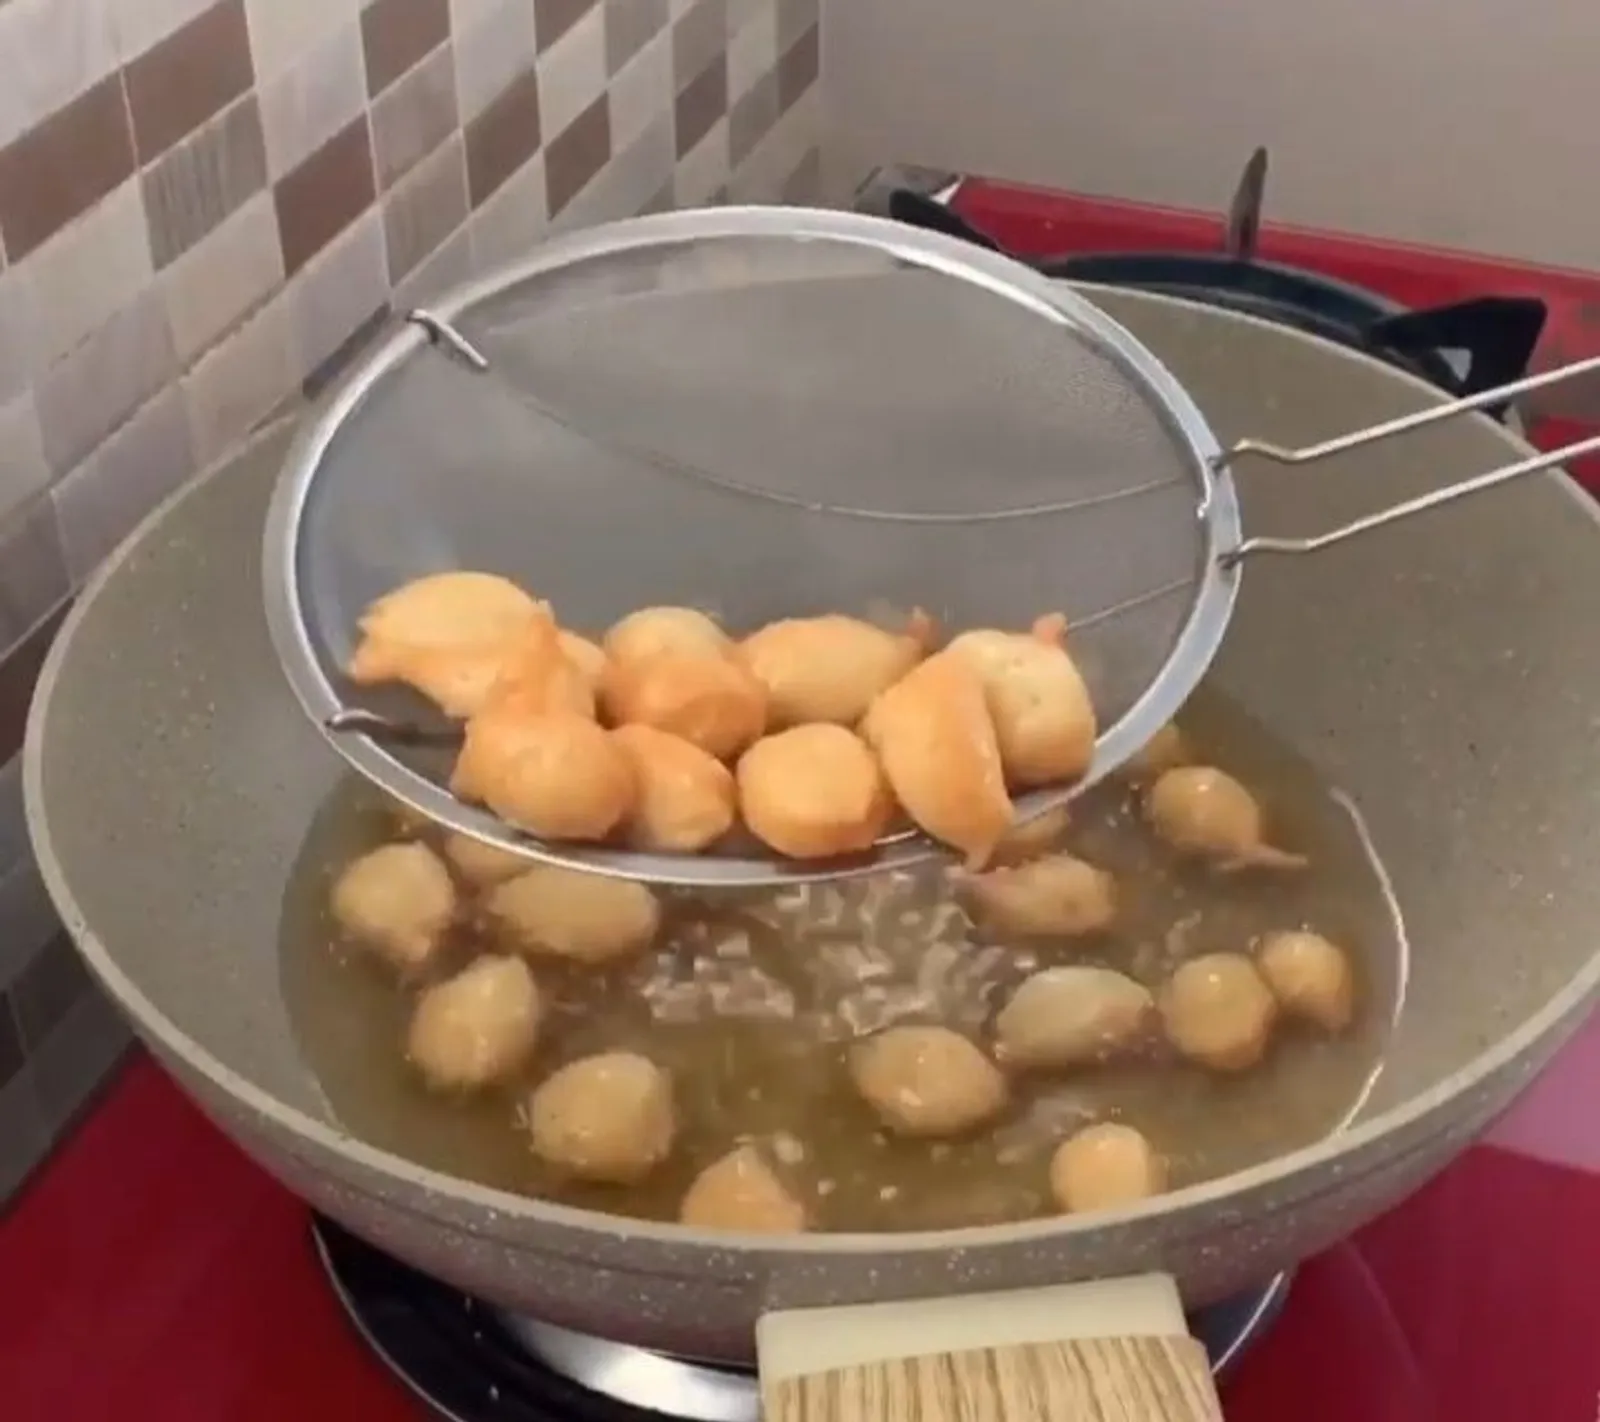 Resep Membuat Arabian Donut yang Lagi Viral di Media Sosial